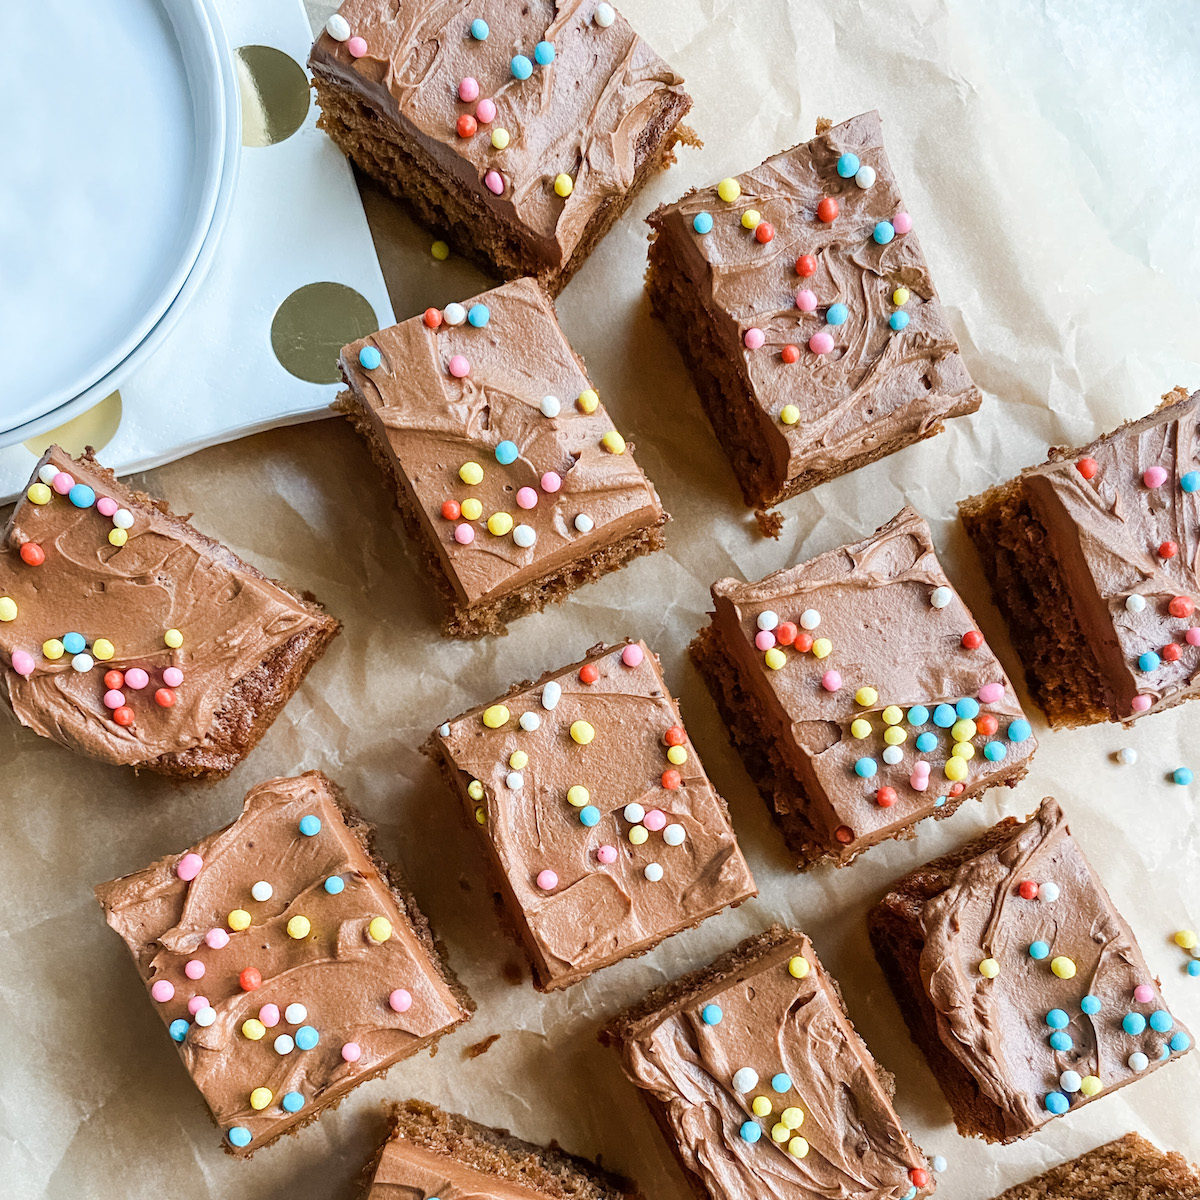 Mini 6 Inch Chocolate Cake Recipe - I Scream for Buttercream